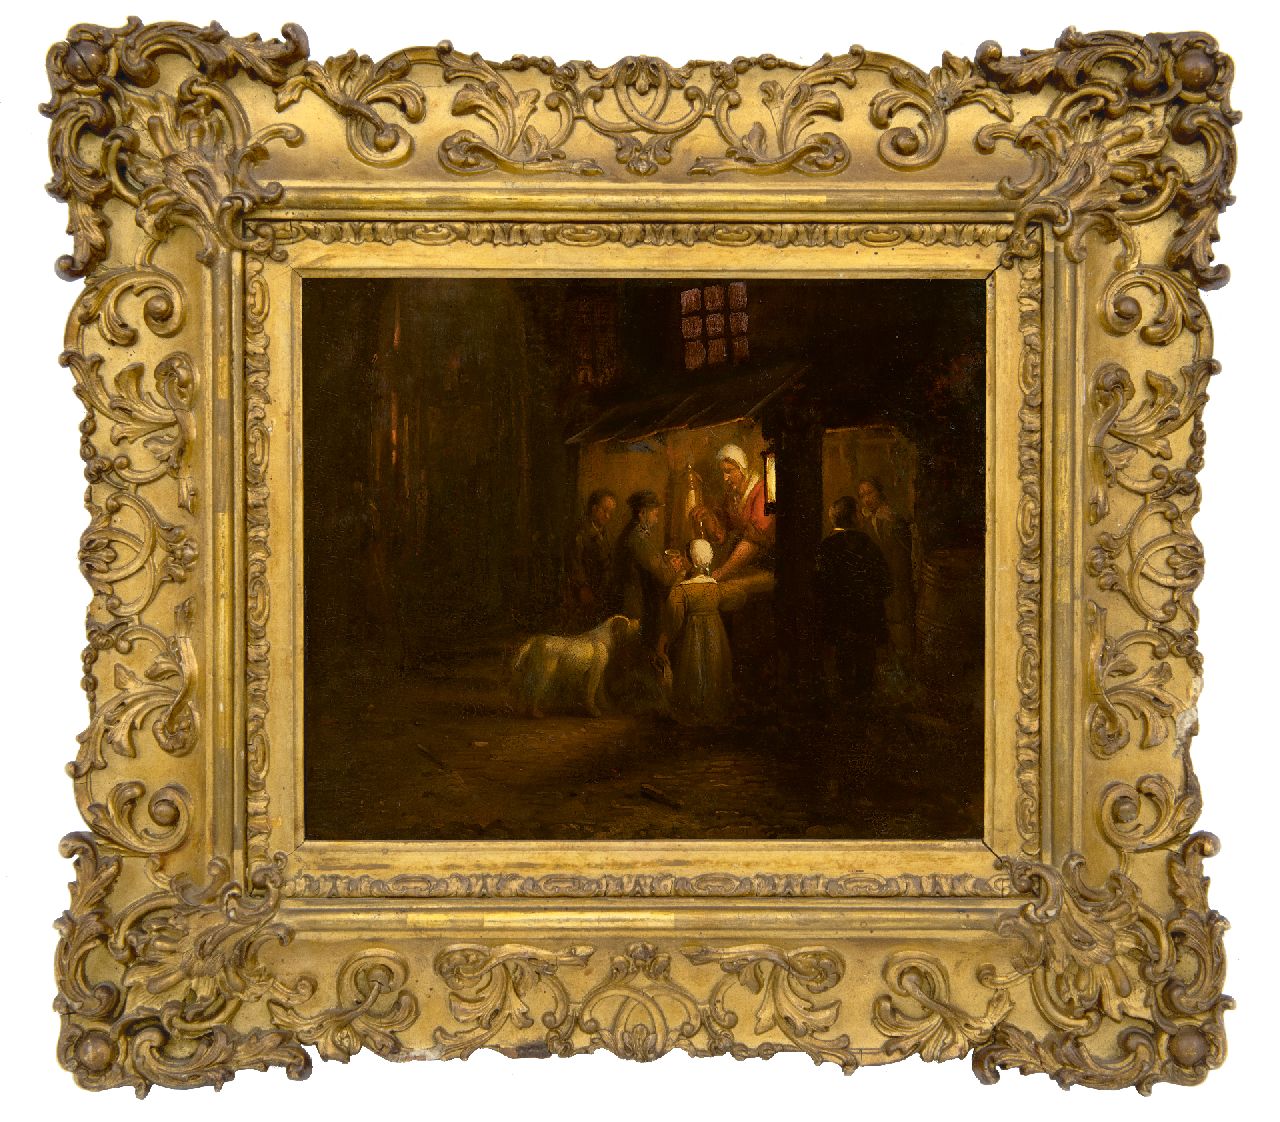 Haanen G.G.  | George Gillis Haanen | Schilderijen te koop aangeboden | Marktkraam met figuren bij kaarslicht, olieverf op paneel 19,7 x 22,4 cm